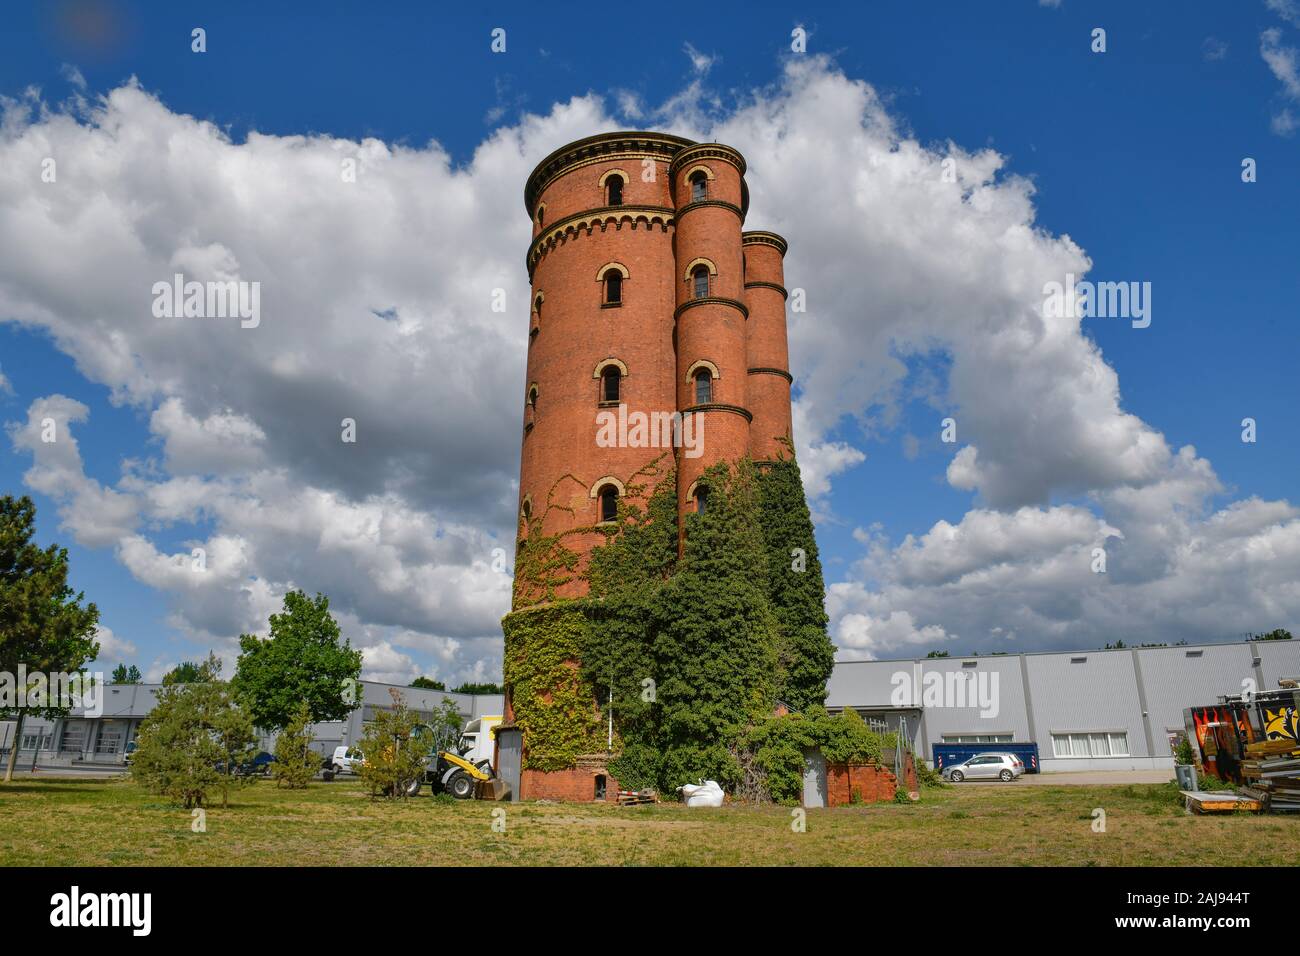 Alter Wasserturm auf dem ehemaligen Gaswerk, Gaußstraße, Charlottenburg, Berlin, Deutschland Stock Photo